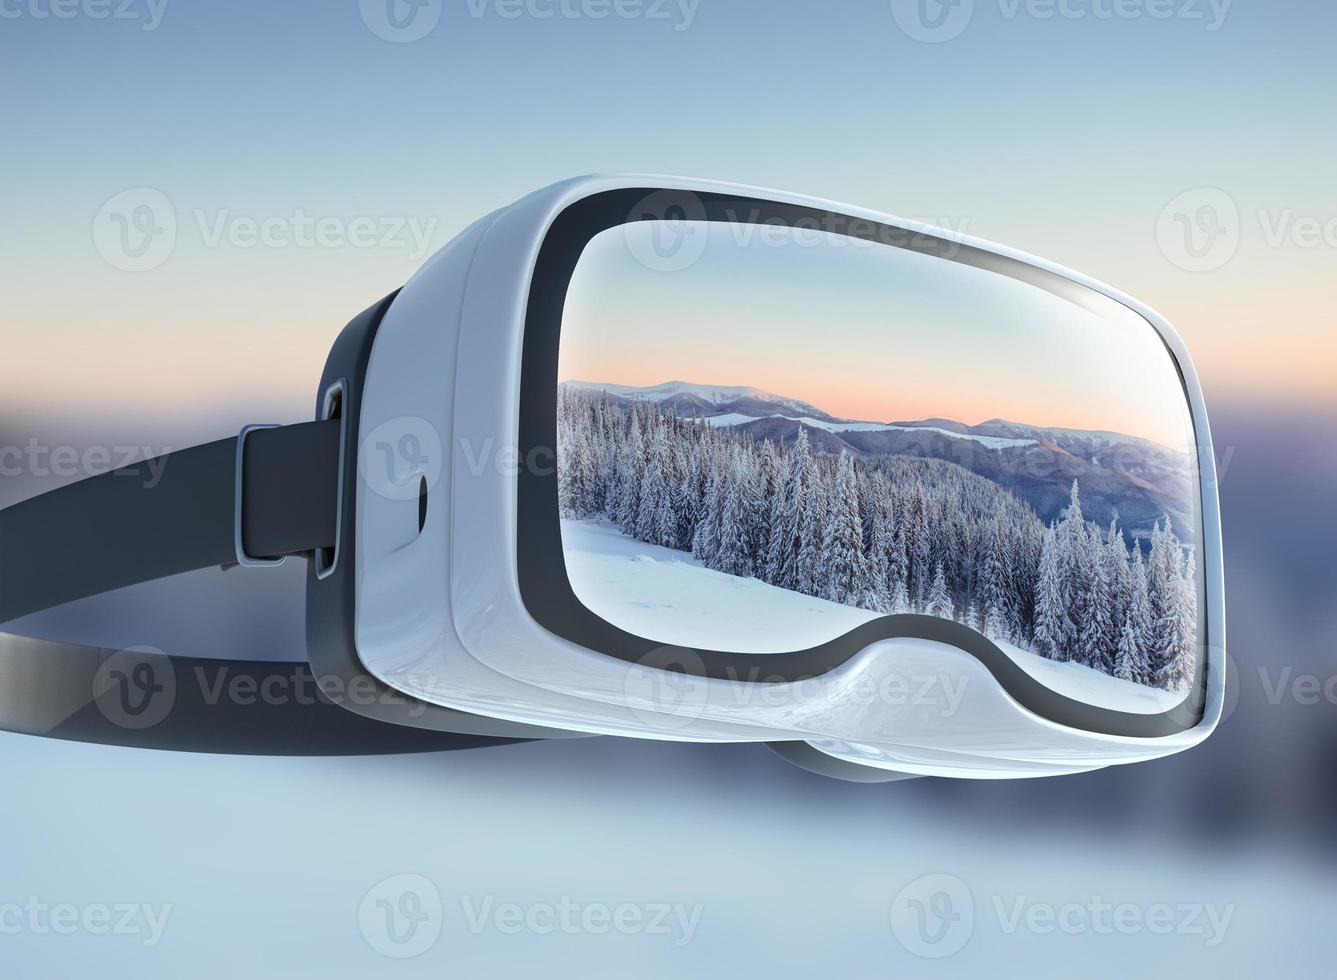 casque de réalité virtuelle, double exposition. paysage d'hiver mystérieux montagnes majestueuses dans. arbre couvert de neige magique. photo